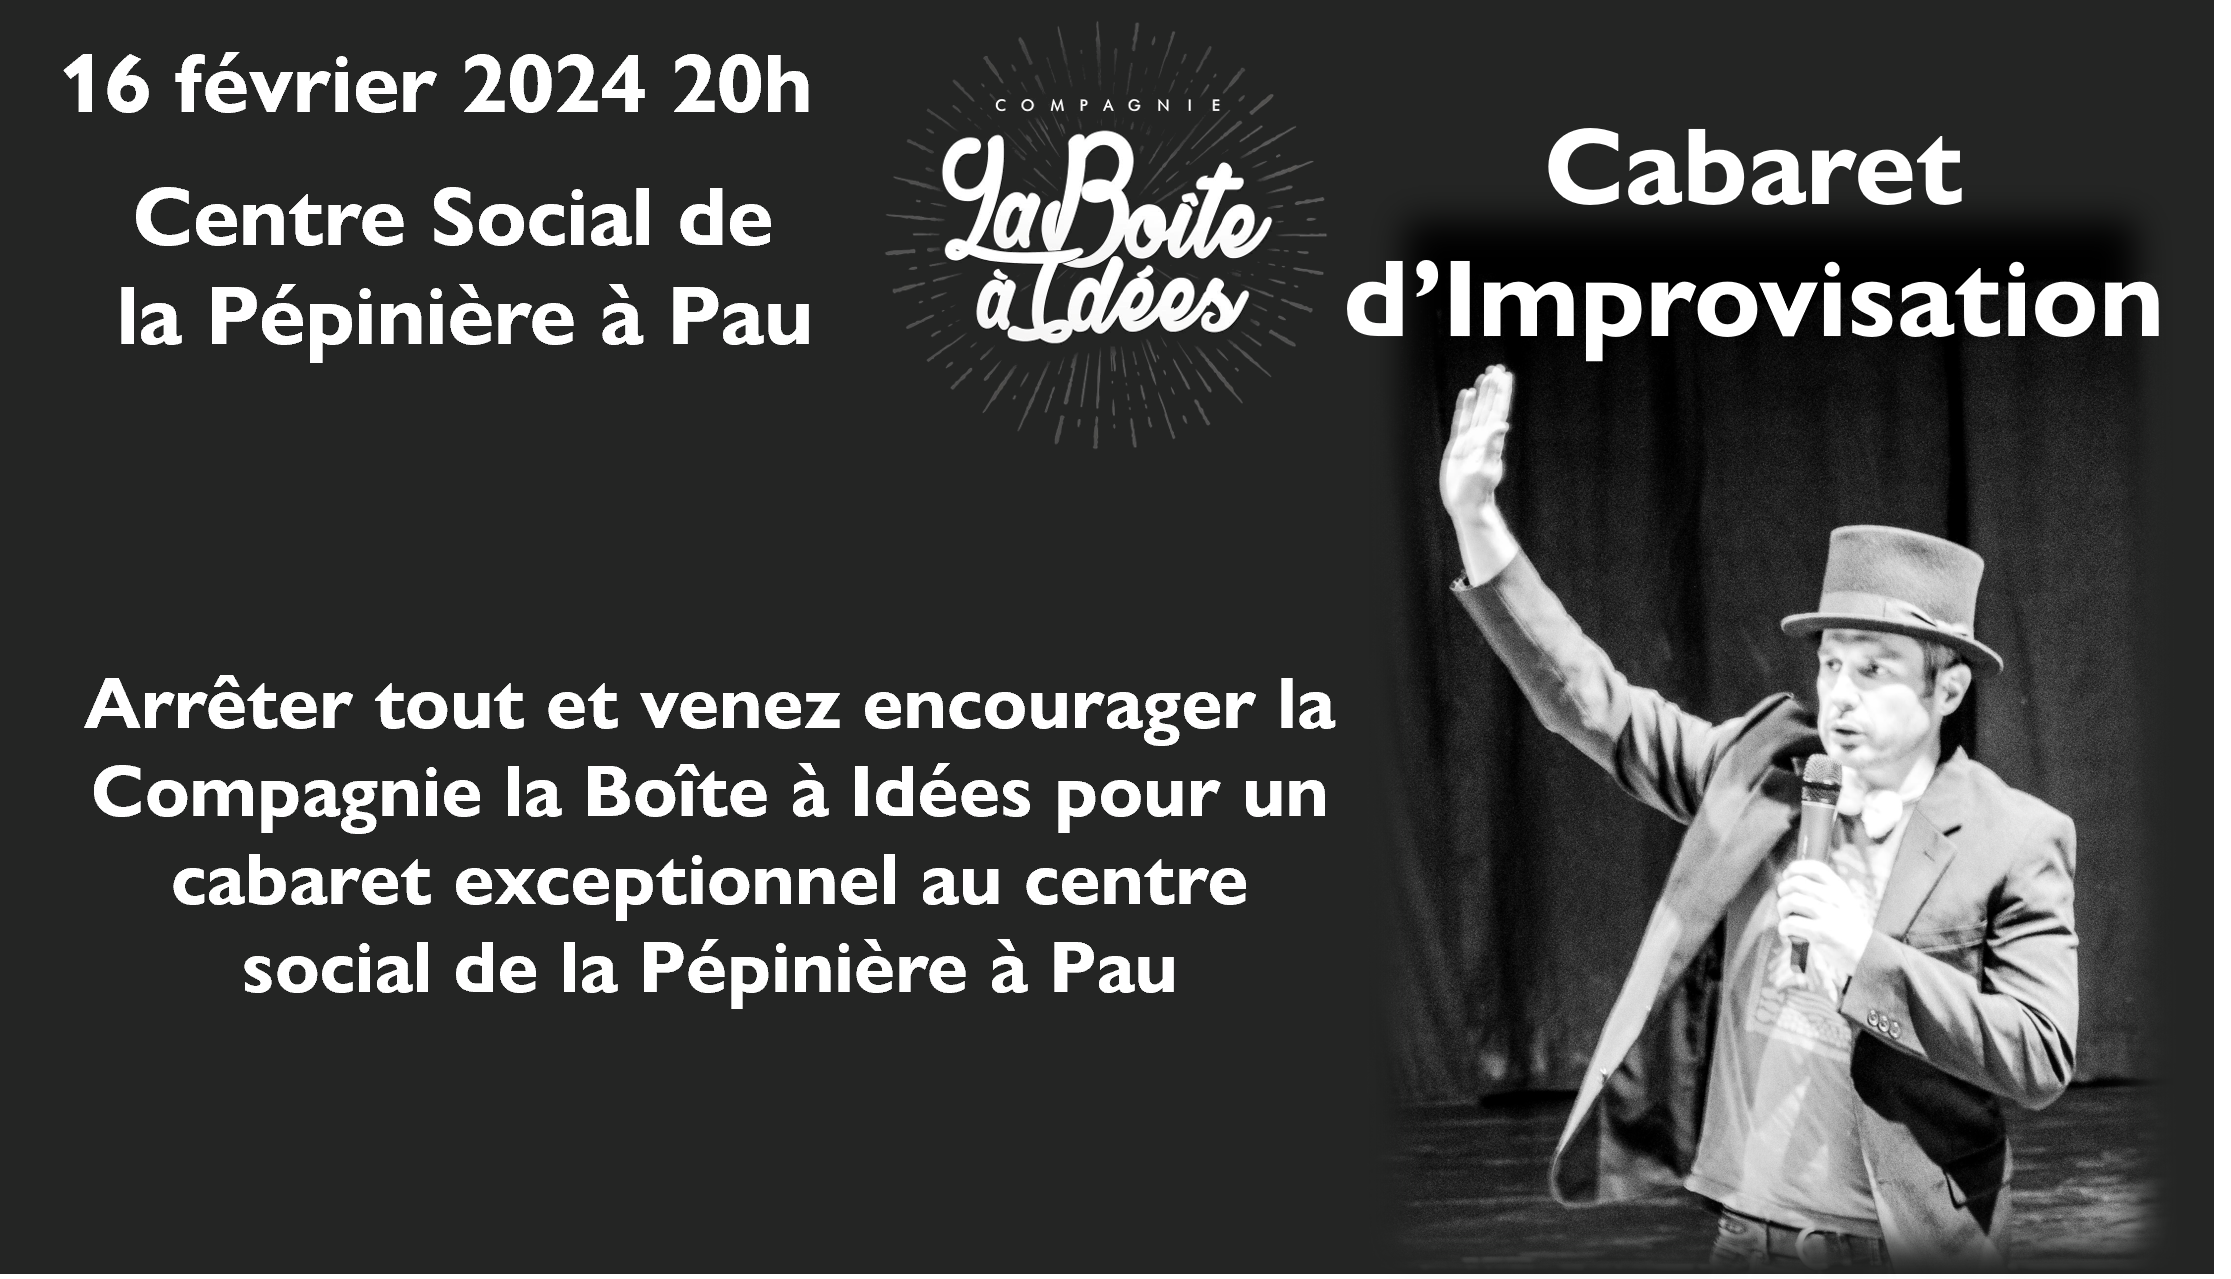 Cabaret au centre social de la Pépinière à Pau avec la CBAI